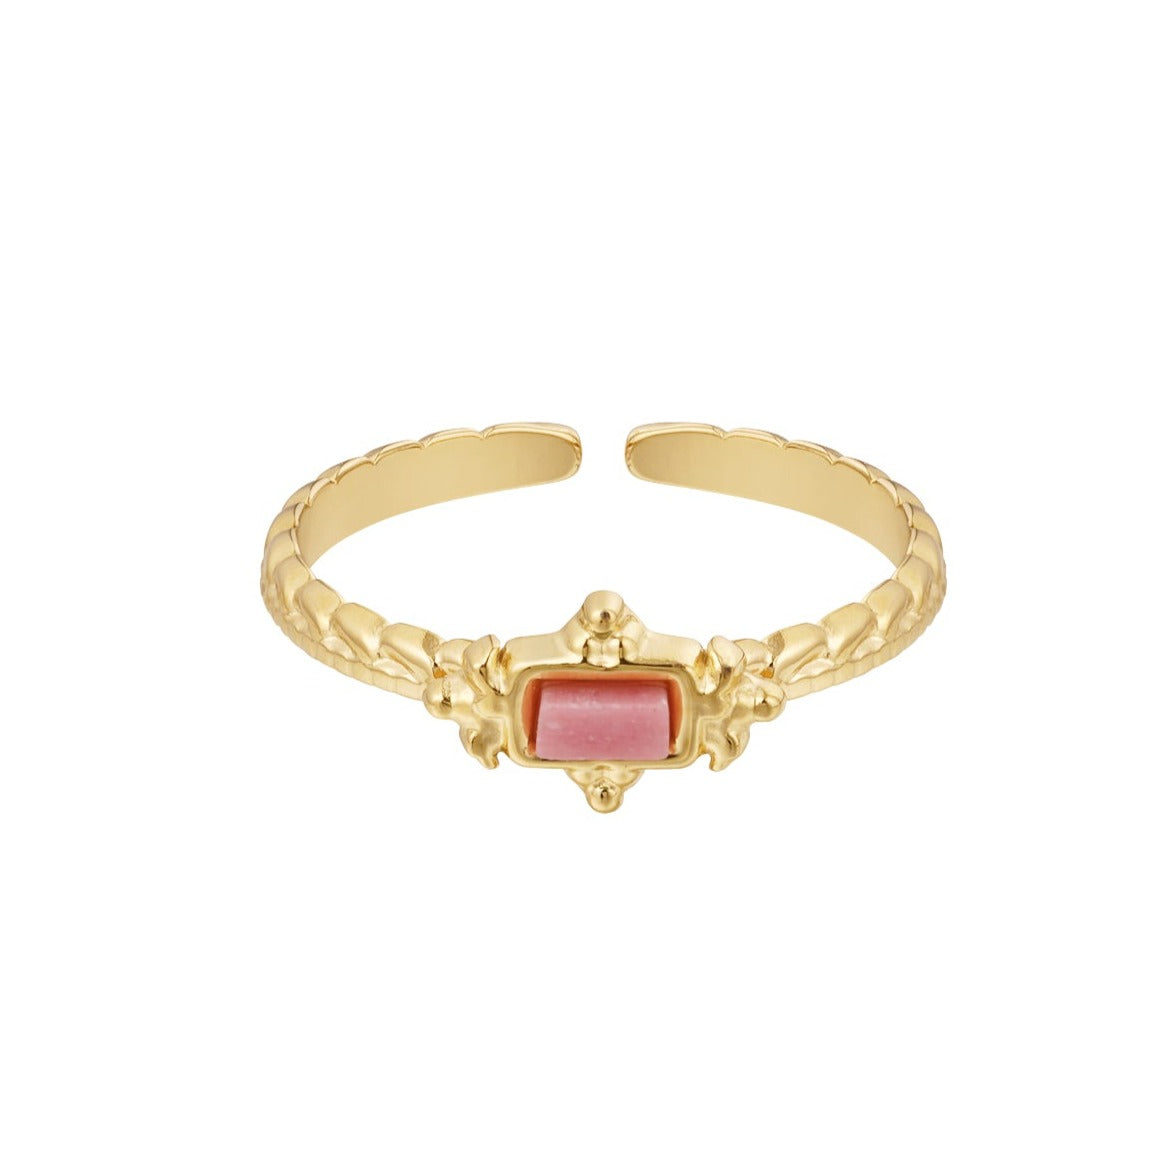 Athena ring - Roze agaat ring goud